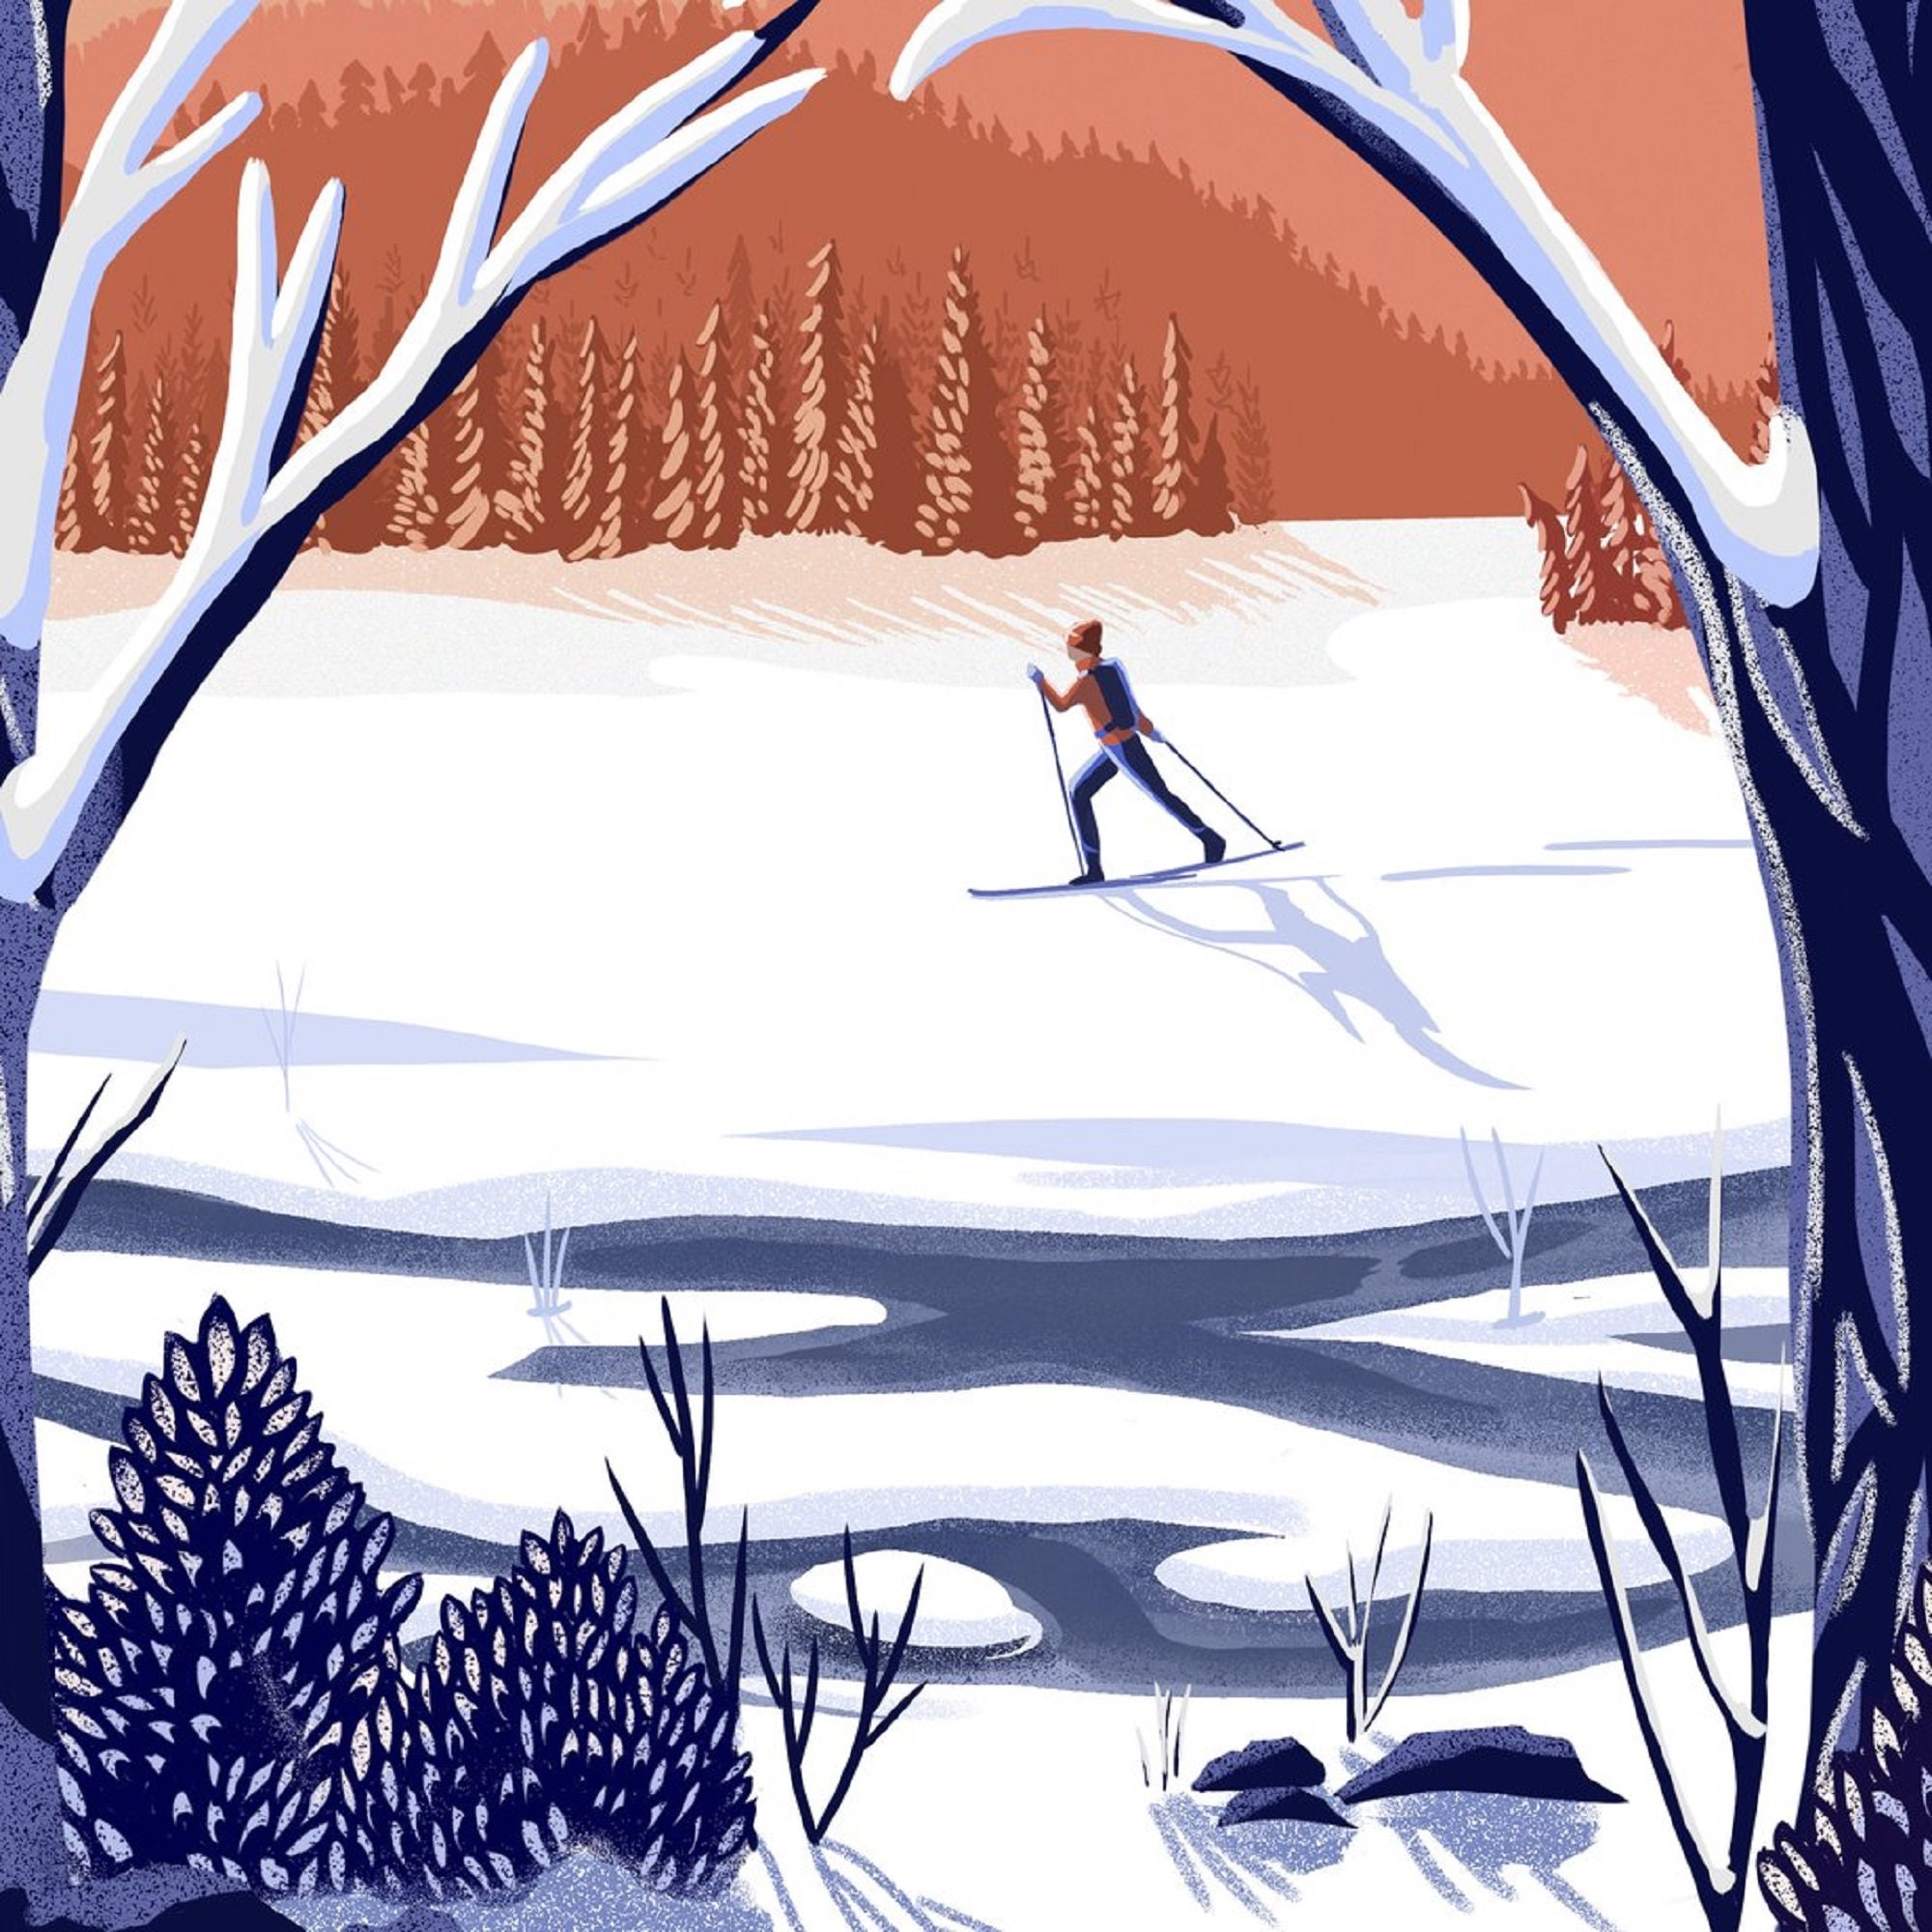 Jackson New Hampshire Illustration XC Skiing | Etsy